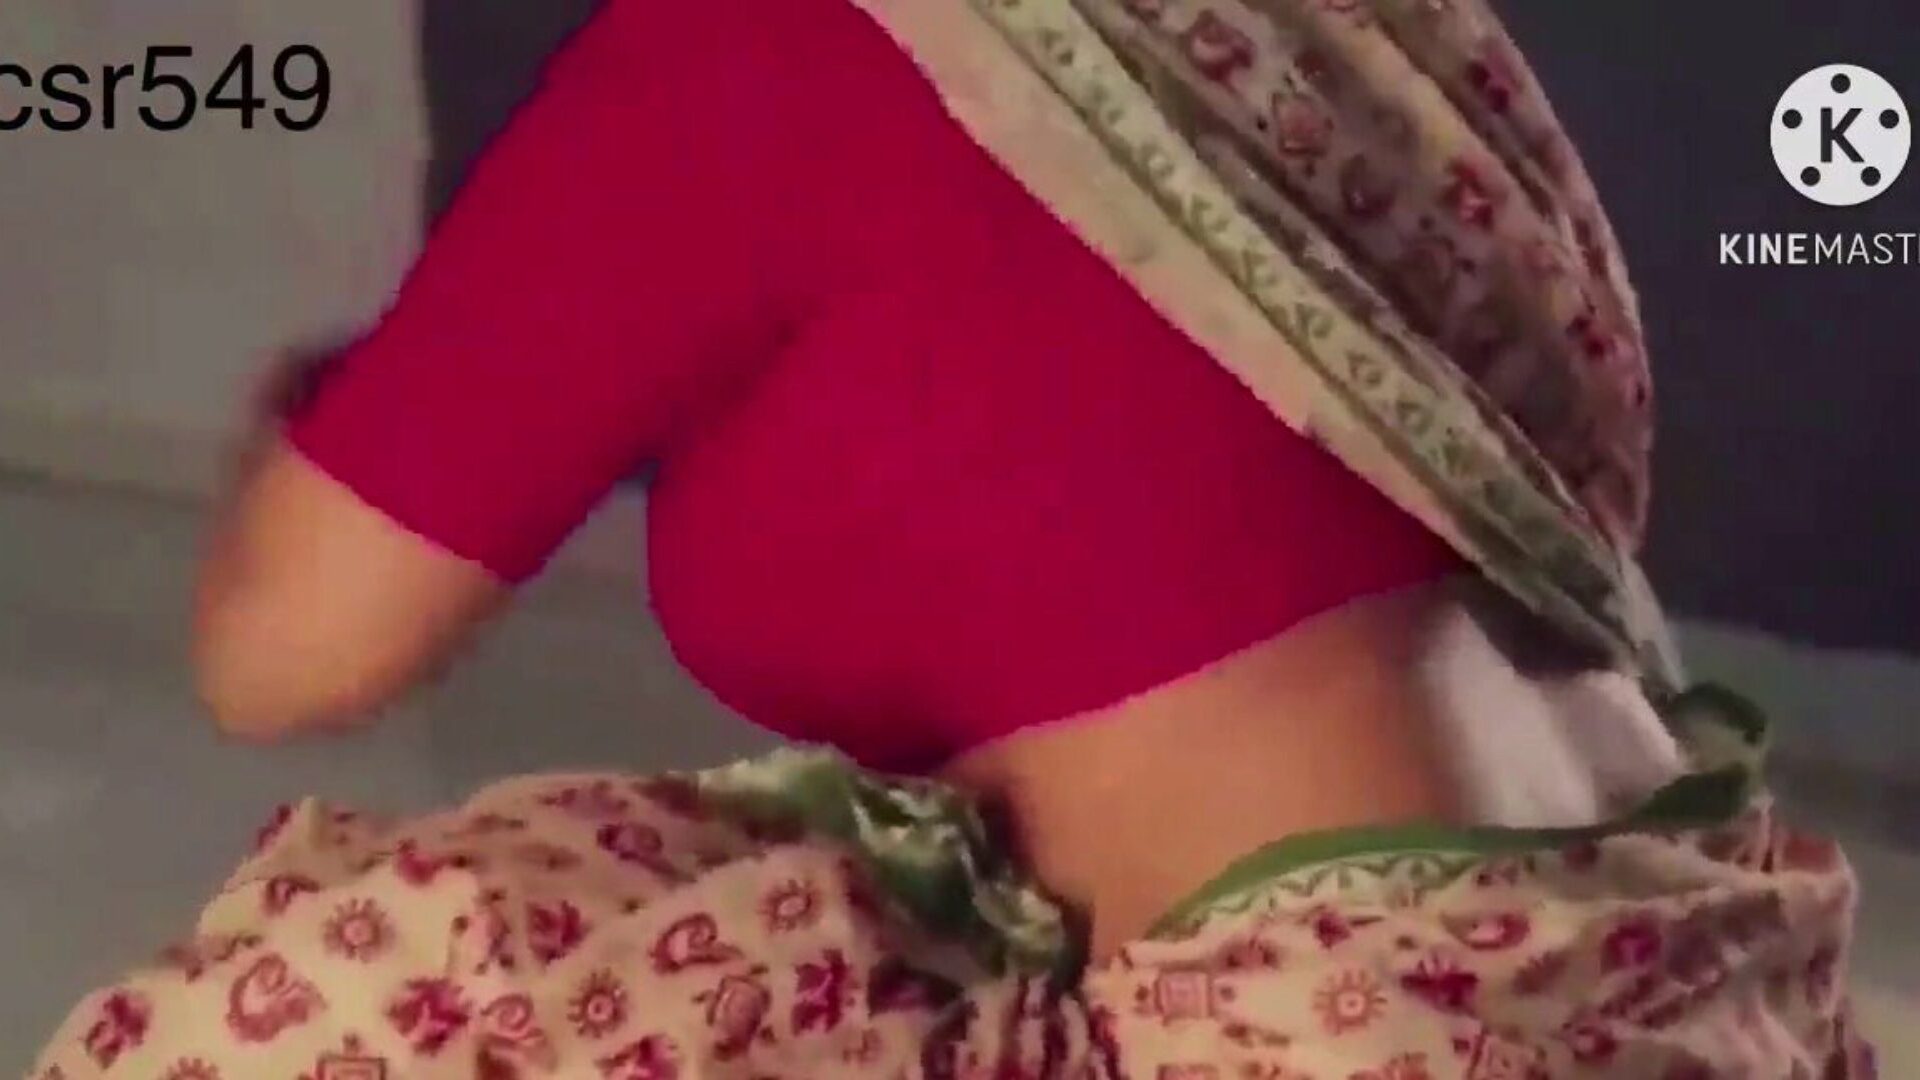 Desi sexy i soczyste czerwone sari kobiety ruchane przez ... oglądaj Desi seksowną i soczystą kobietę w czerwonej sari ruchanej przez sługę film na xHamster - ostateczna baza danych darmowych azjatyckich indyjskich filmów porno w HD